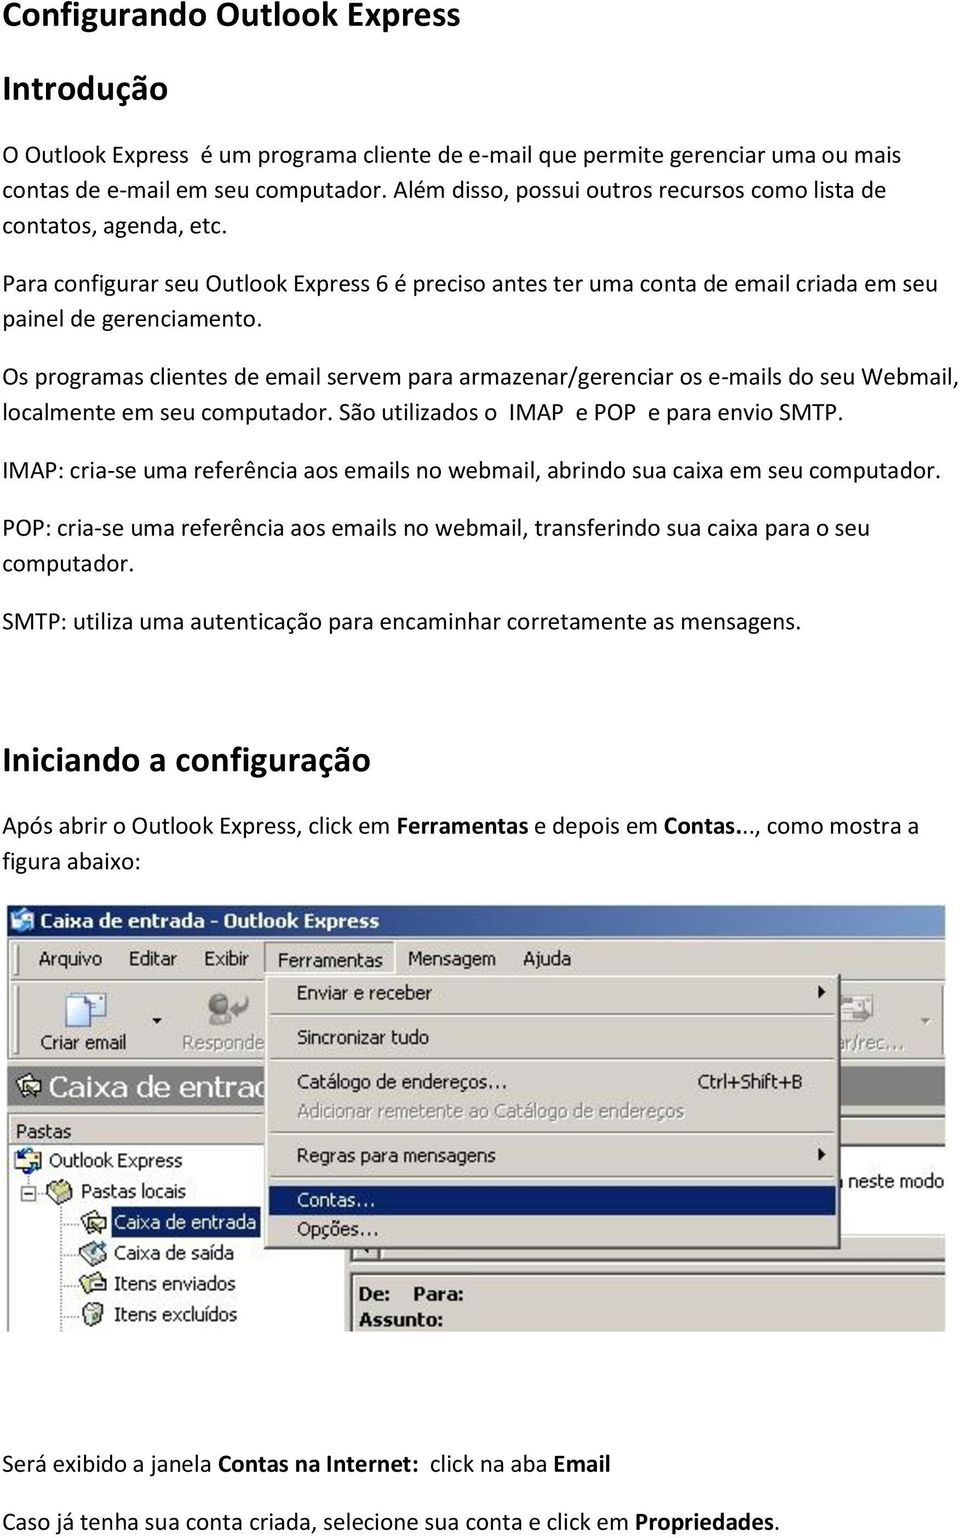 Os programas clientes de email servem para armazenar/gerenciar os e-mails do seu Webmail, localmente em seu computador. São utilizados o IMAP e POP e para envio SMTP.